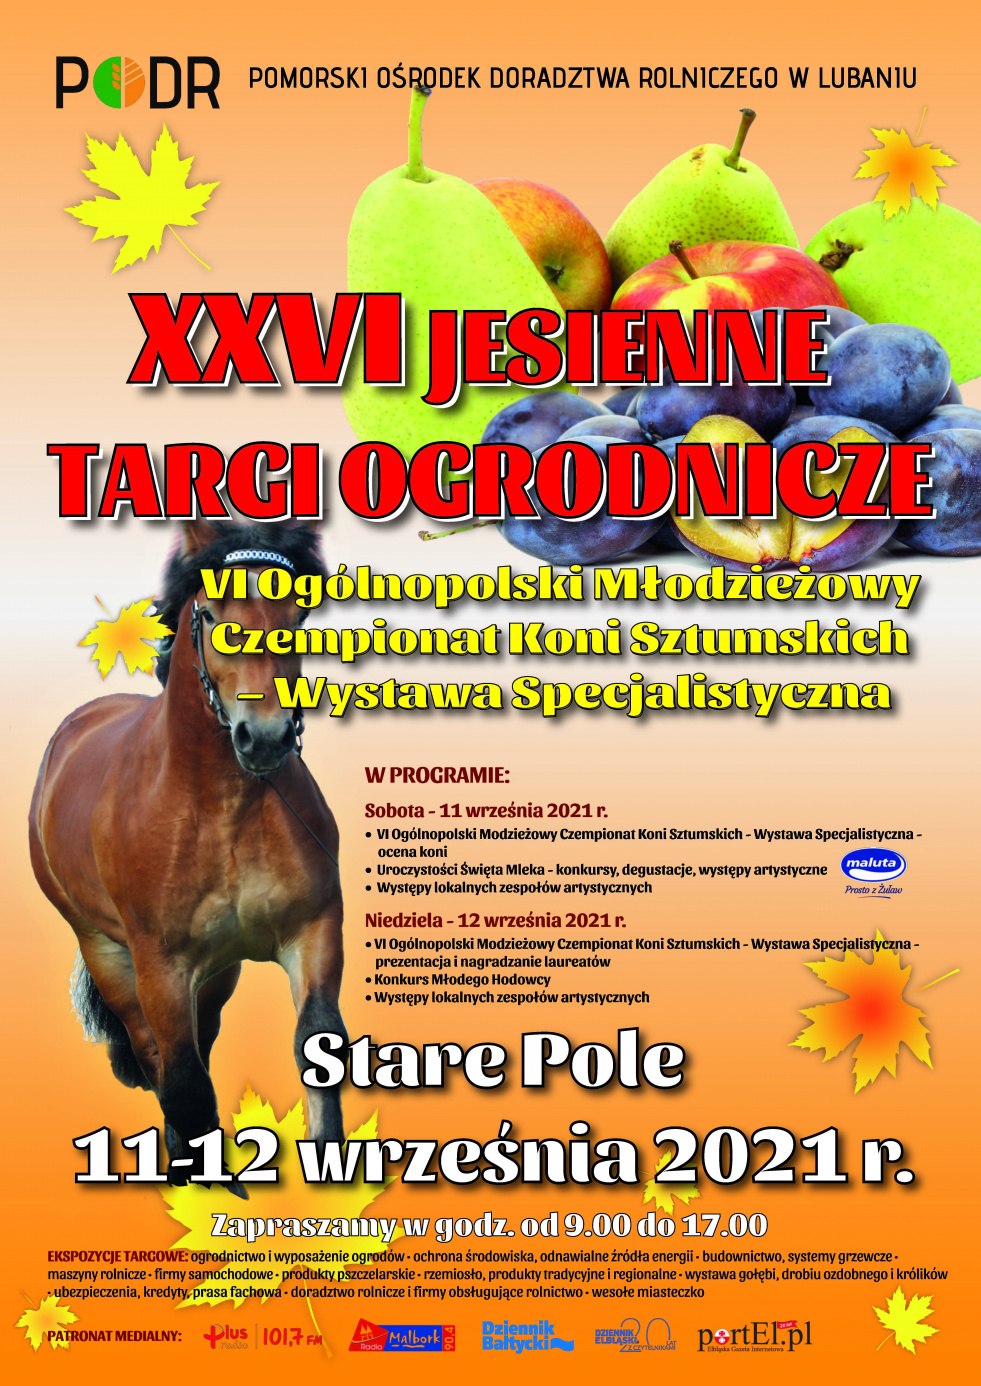 XXVI Jesienne targi ogrodnicze 11-12 września 2021 r. Stare Pole